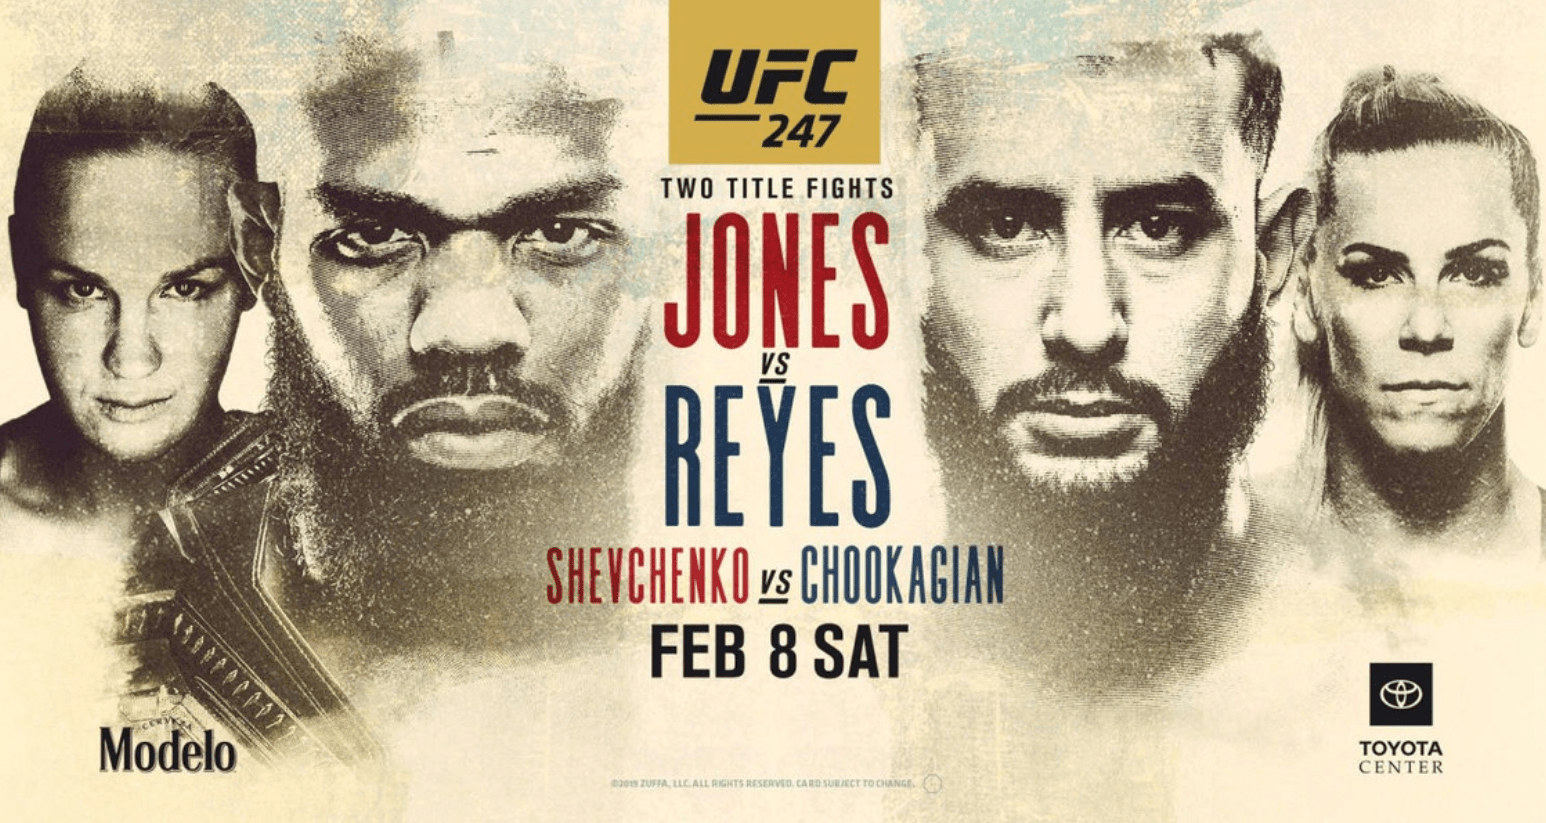 UFC 247: Jones vs Reyes Results